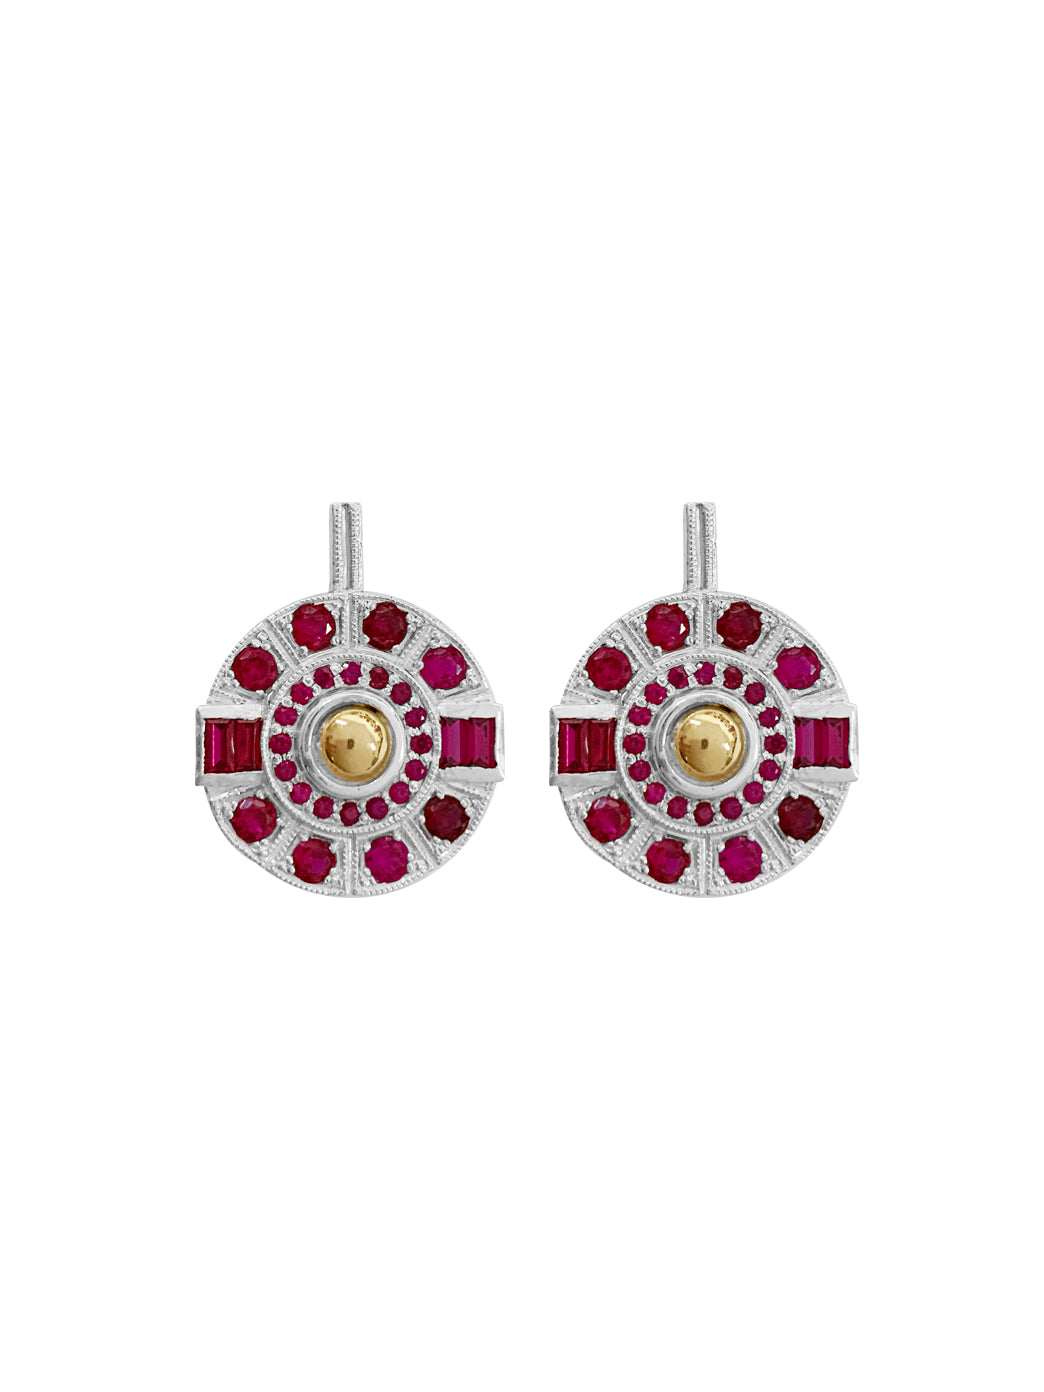 Fiorina Jewellery Aztec Earrings Ruby